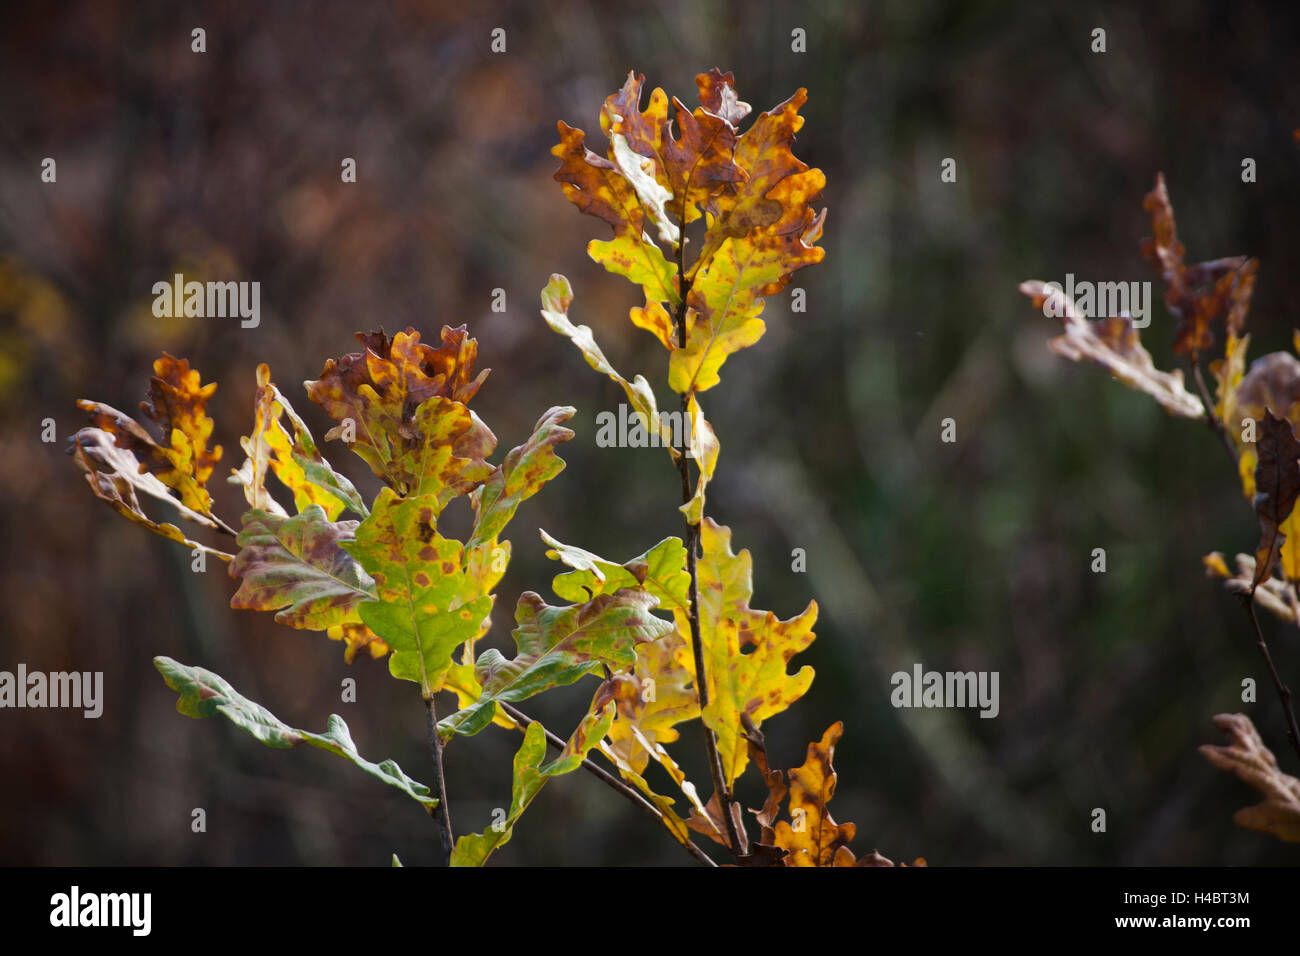 Oak leaf in autumn Stock Photo